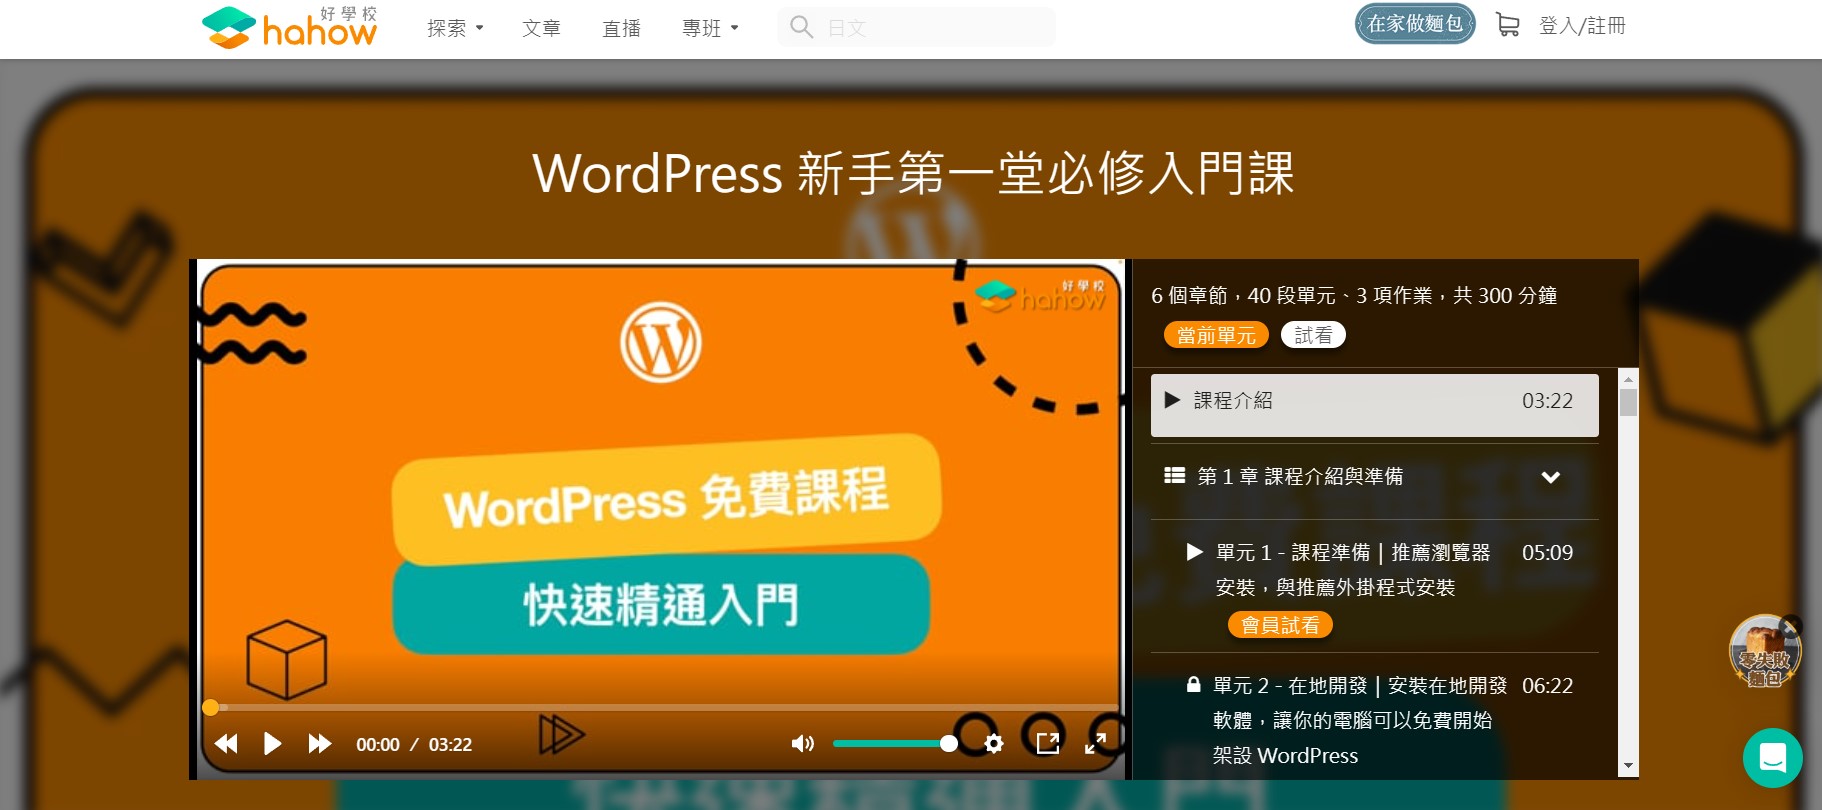 隨意窩Xuite結束營運後還能去哪裡？創作者20個平台與8個部落格推薦，但我還是最建議用Wordpress自架站